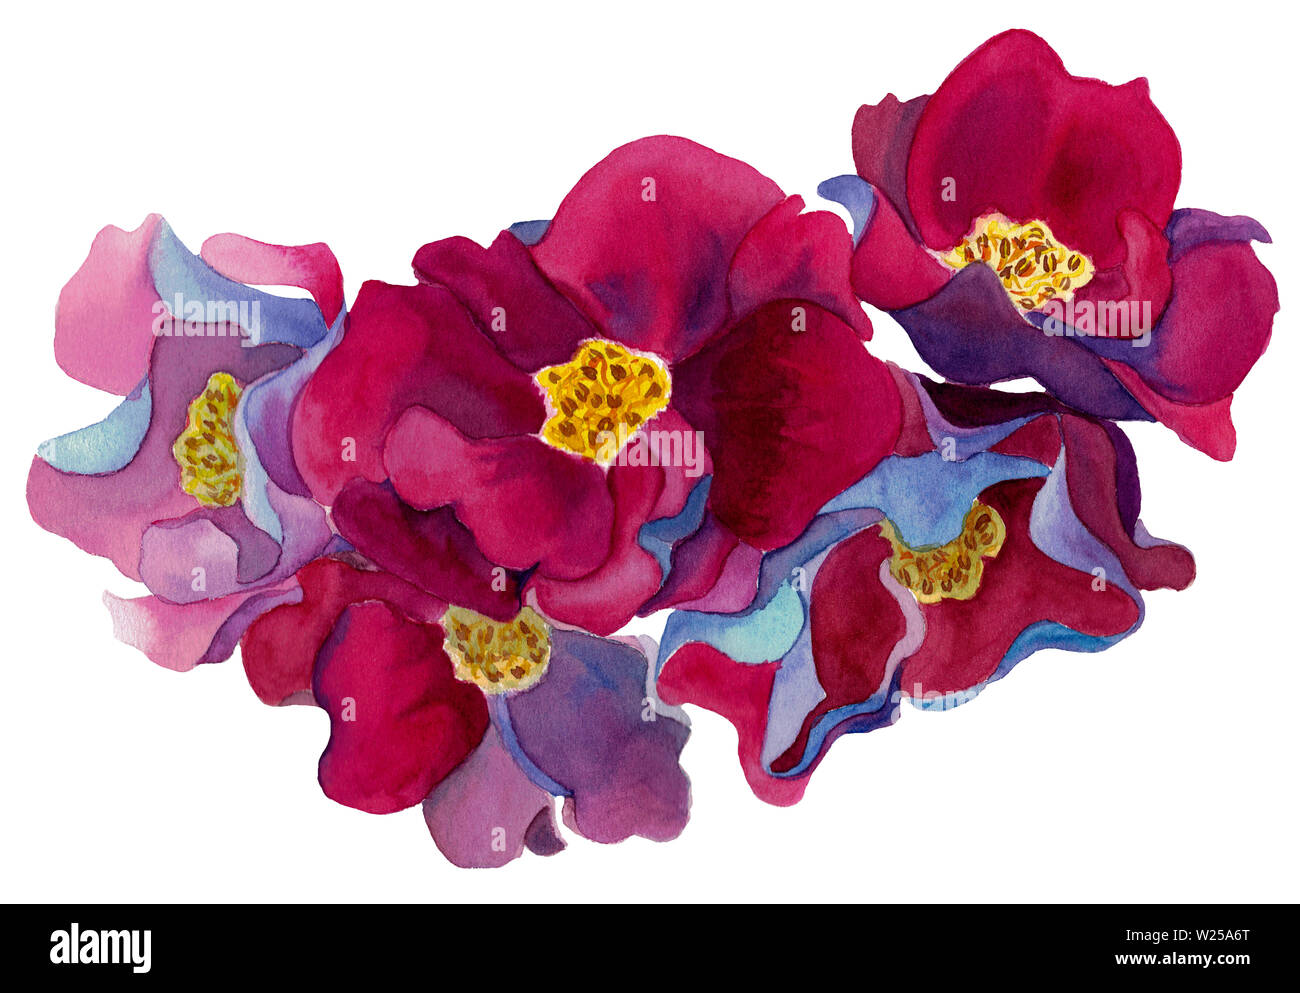 Acquerello disegnata a mano serie di fantastici con fiori rosa e petali di colore rosso, blu e viola, isolati su sfondo bianco. Design per decorazioni per matrimoni. Foto Stock